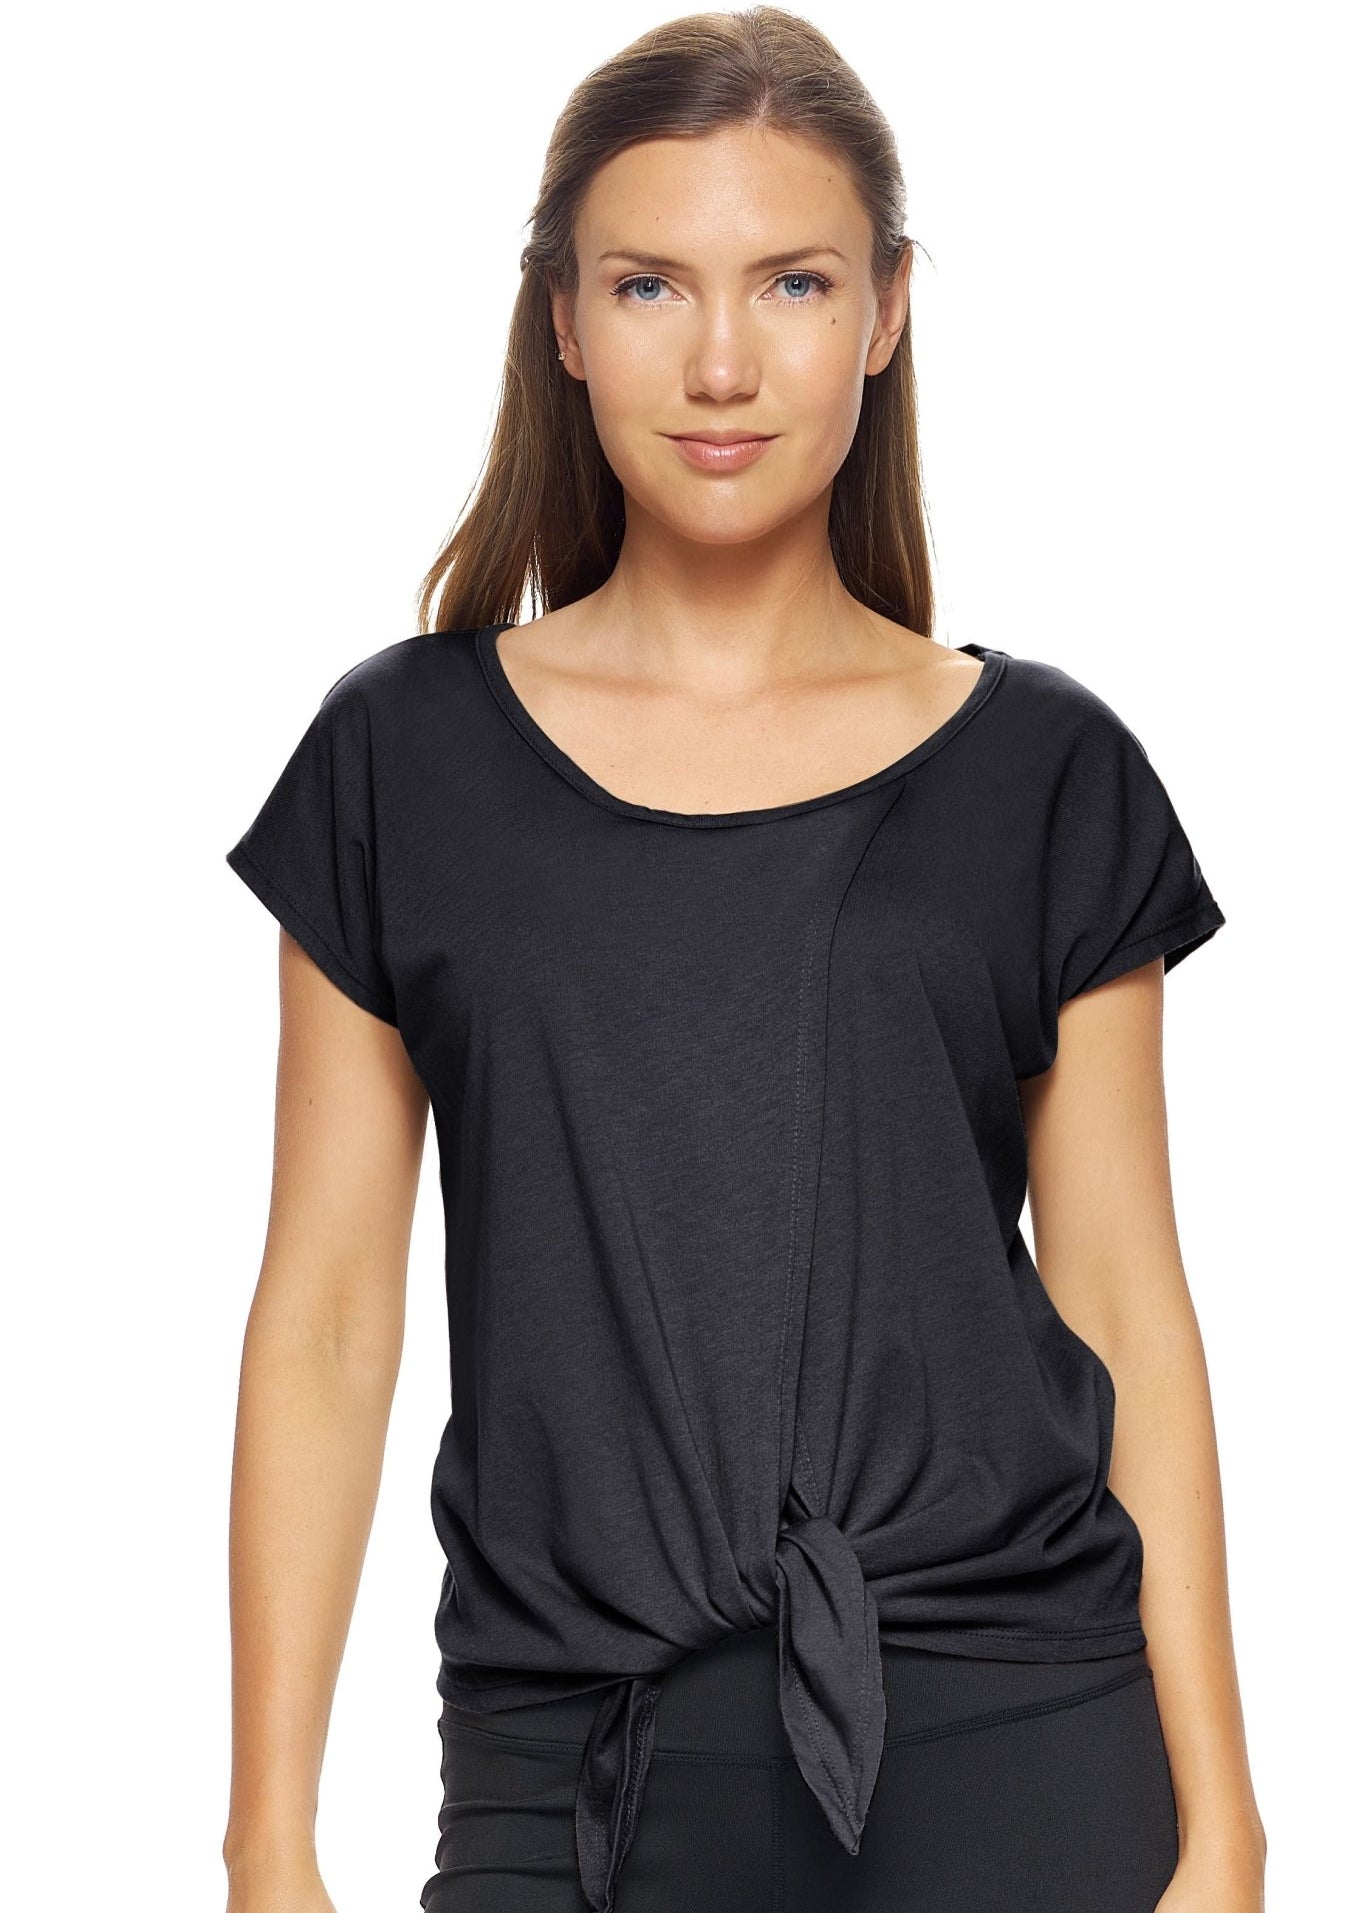 Expert Brand MoCA Plant Based Split Front Tie T-Shirt - Plus - DressbarnActivewear